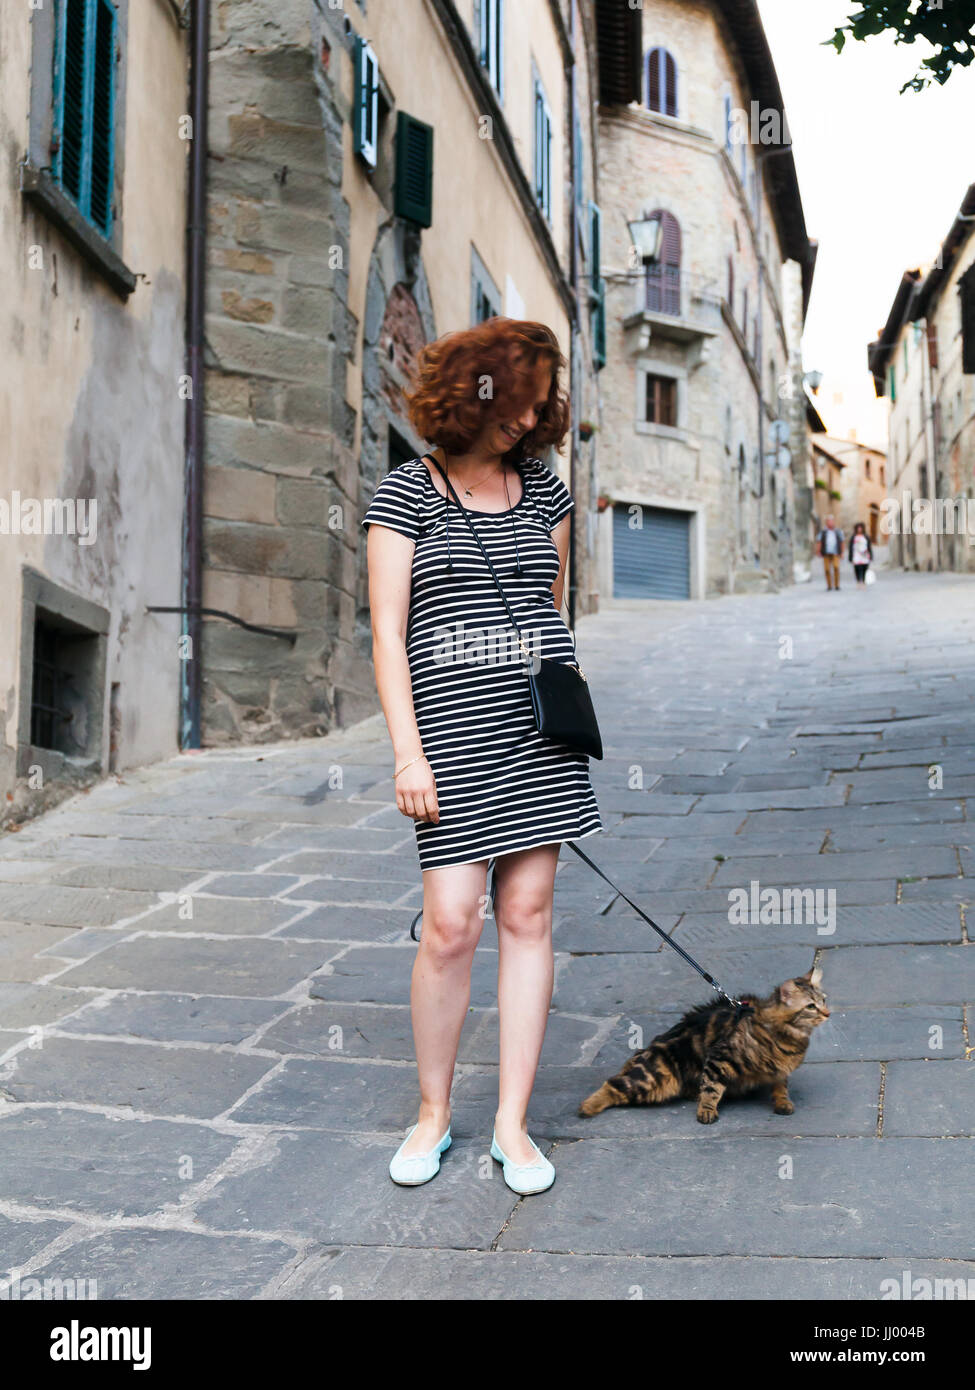 Cortona, Italien - 15. Juli 2017: Mädchen flaniert durch die Straßen der kleinen toskanischen Stadt mit ihrer Katze an der Leine. Stockfoto